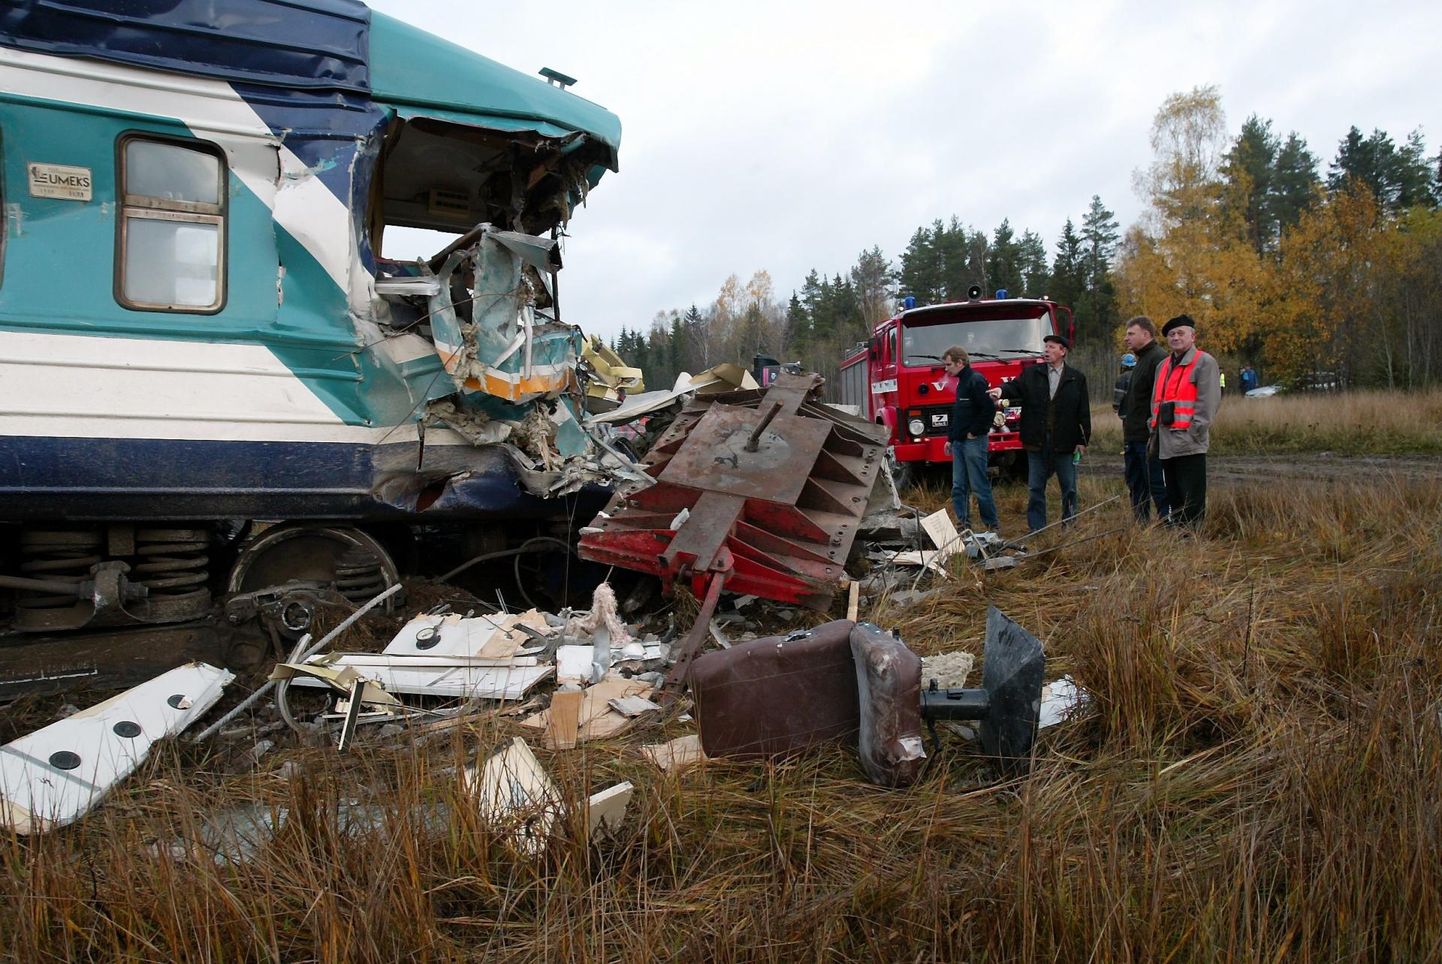 Väga raske raudteeõnnetus juhtus meie maakonnas viimati 2006. aasta oktoobris, kui Tamsalu lähistel sõitis reisirongile ette paneeliveok. Reisirong paiskus rööbastelt maha.